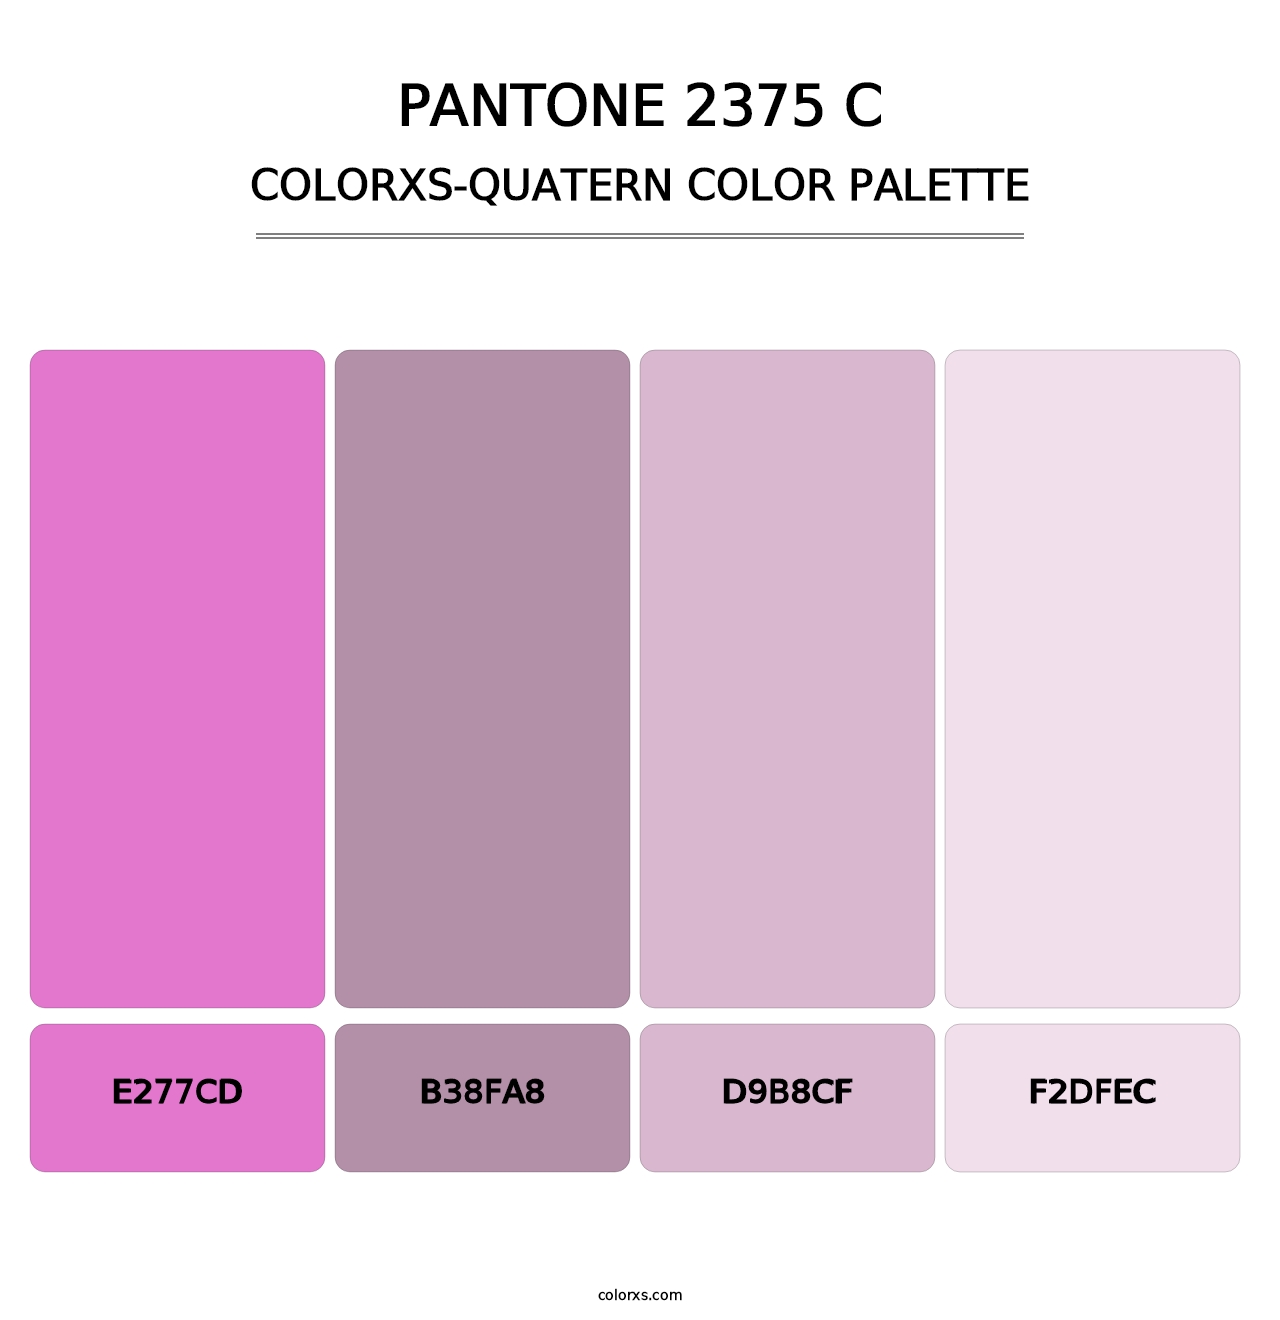 PANTONE 2375 C - Colorxs Quatern Palette